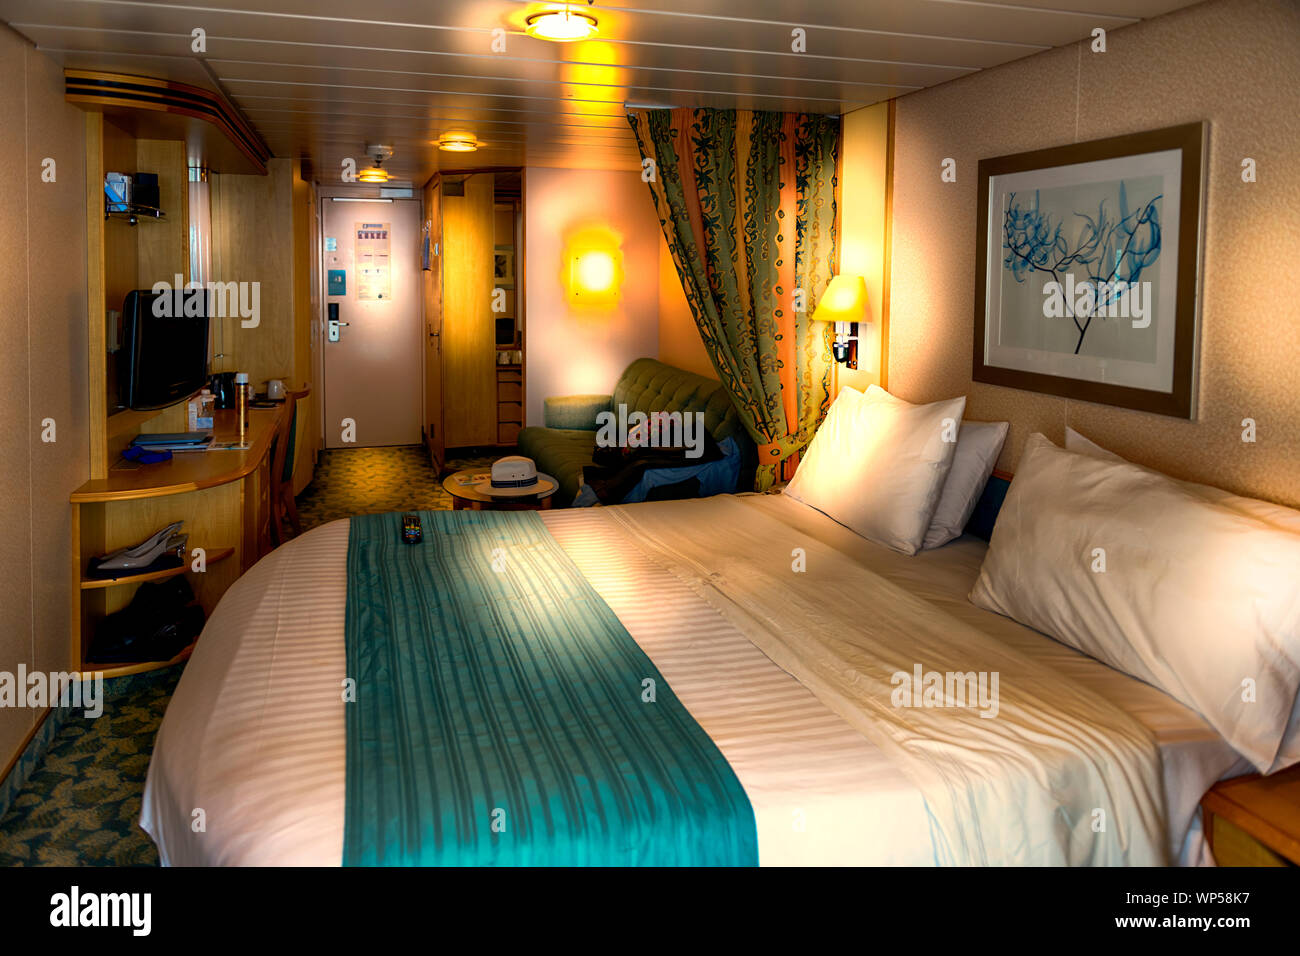 Indépendance de la mer intérieure lit chambre cabine balcon stateroom. Navire de croisière Royal Caribbean indépendance des mers Banque D'Images